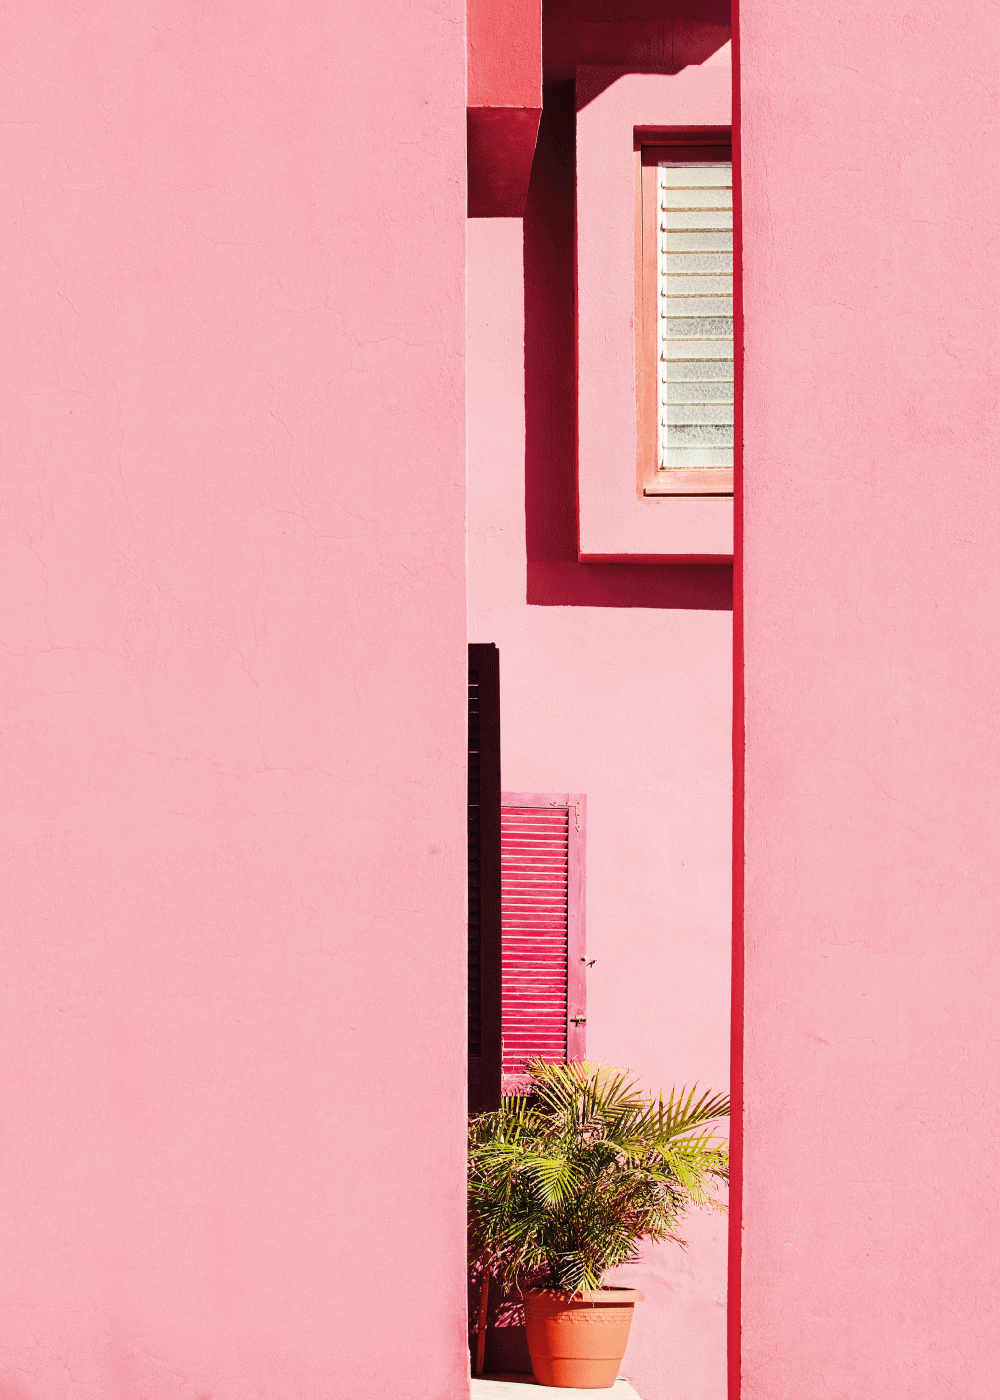 Billede af Pink walls - Arkitektur plakat